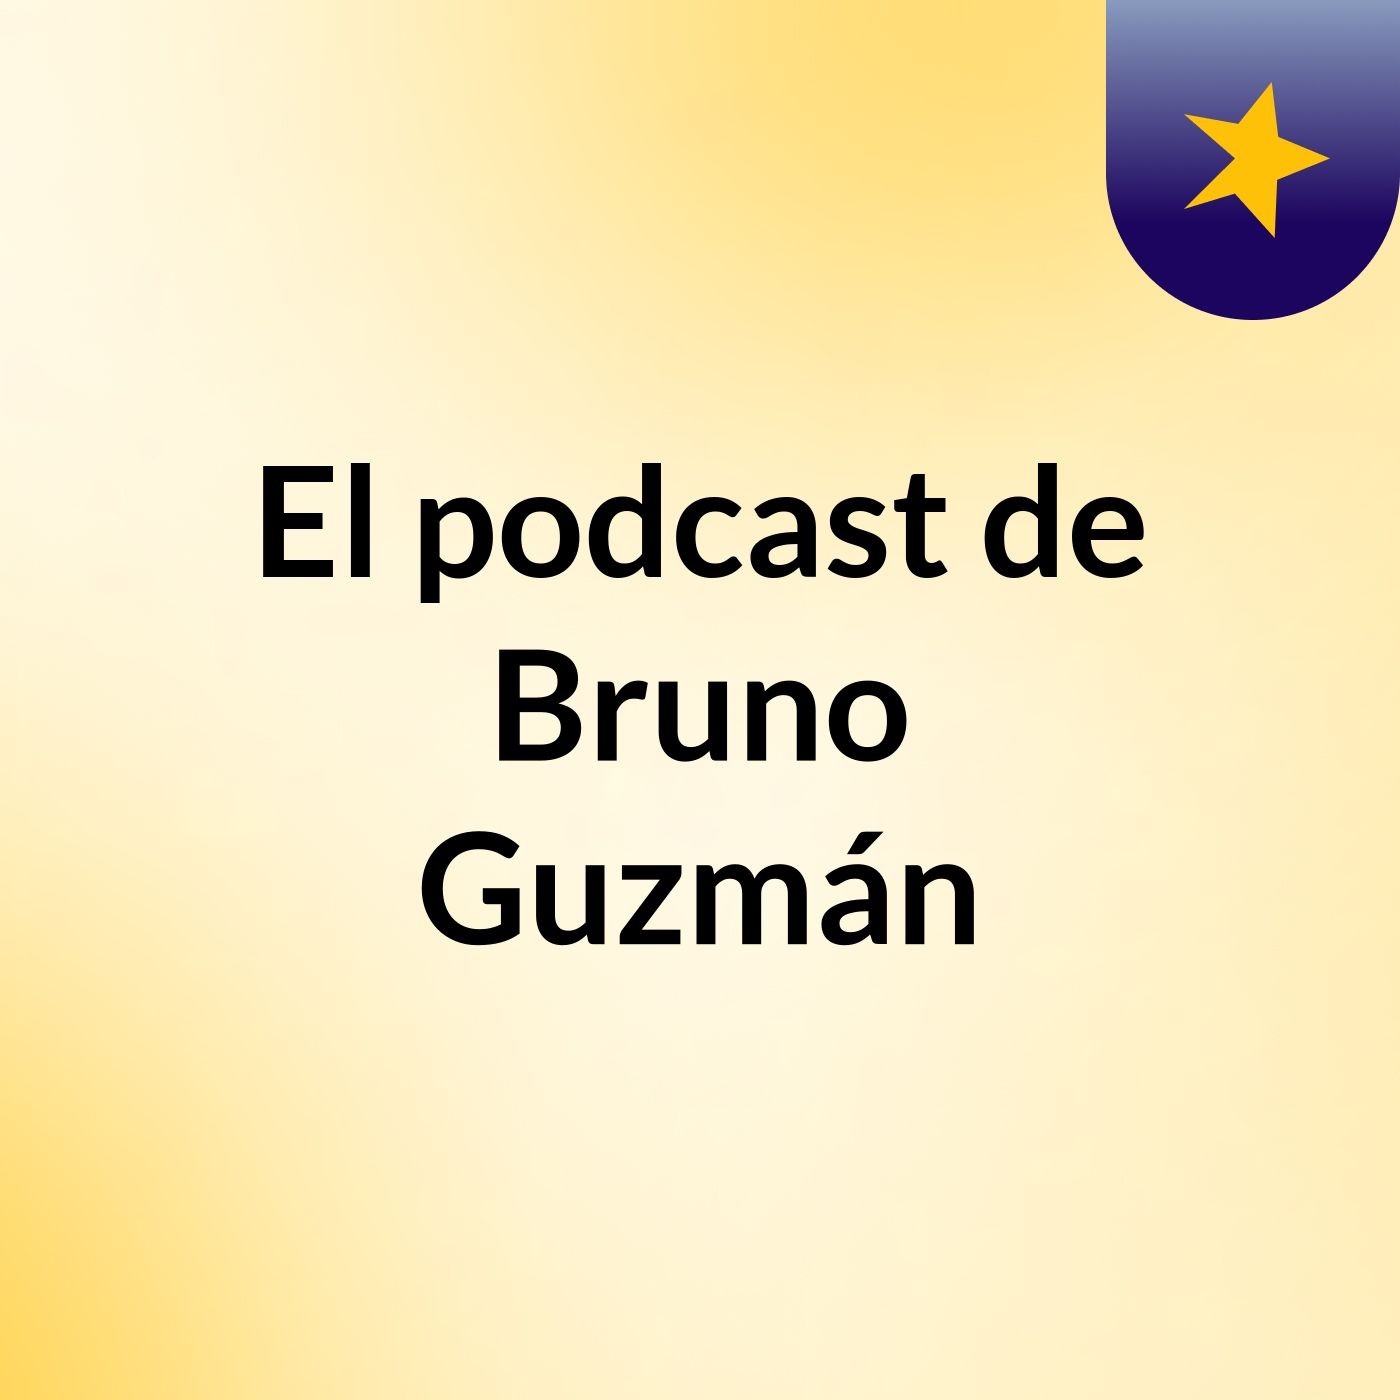 El podcast de Bruno Guzmán